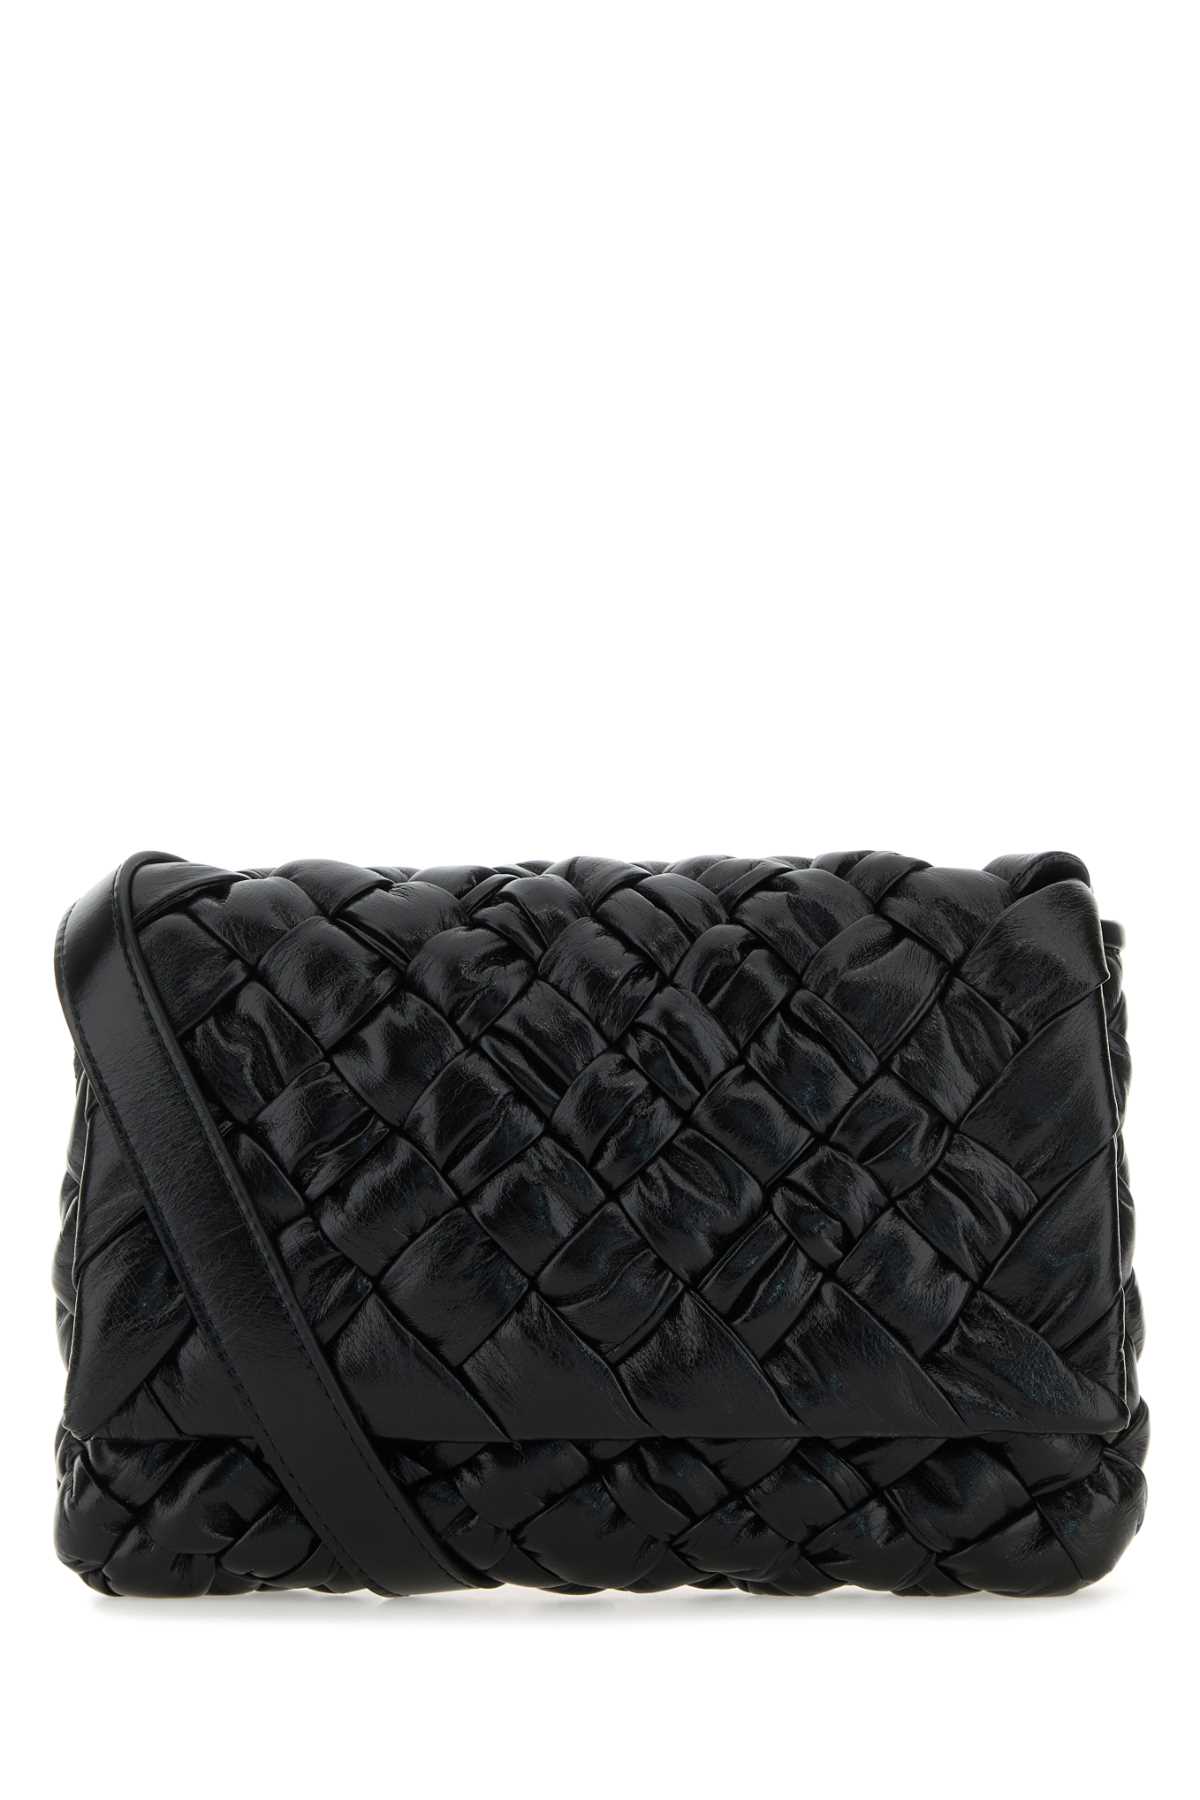 Shop Bottega Veneta Black Leather Crossbody Bag In Blacksilver